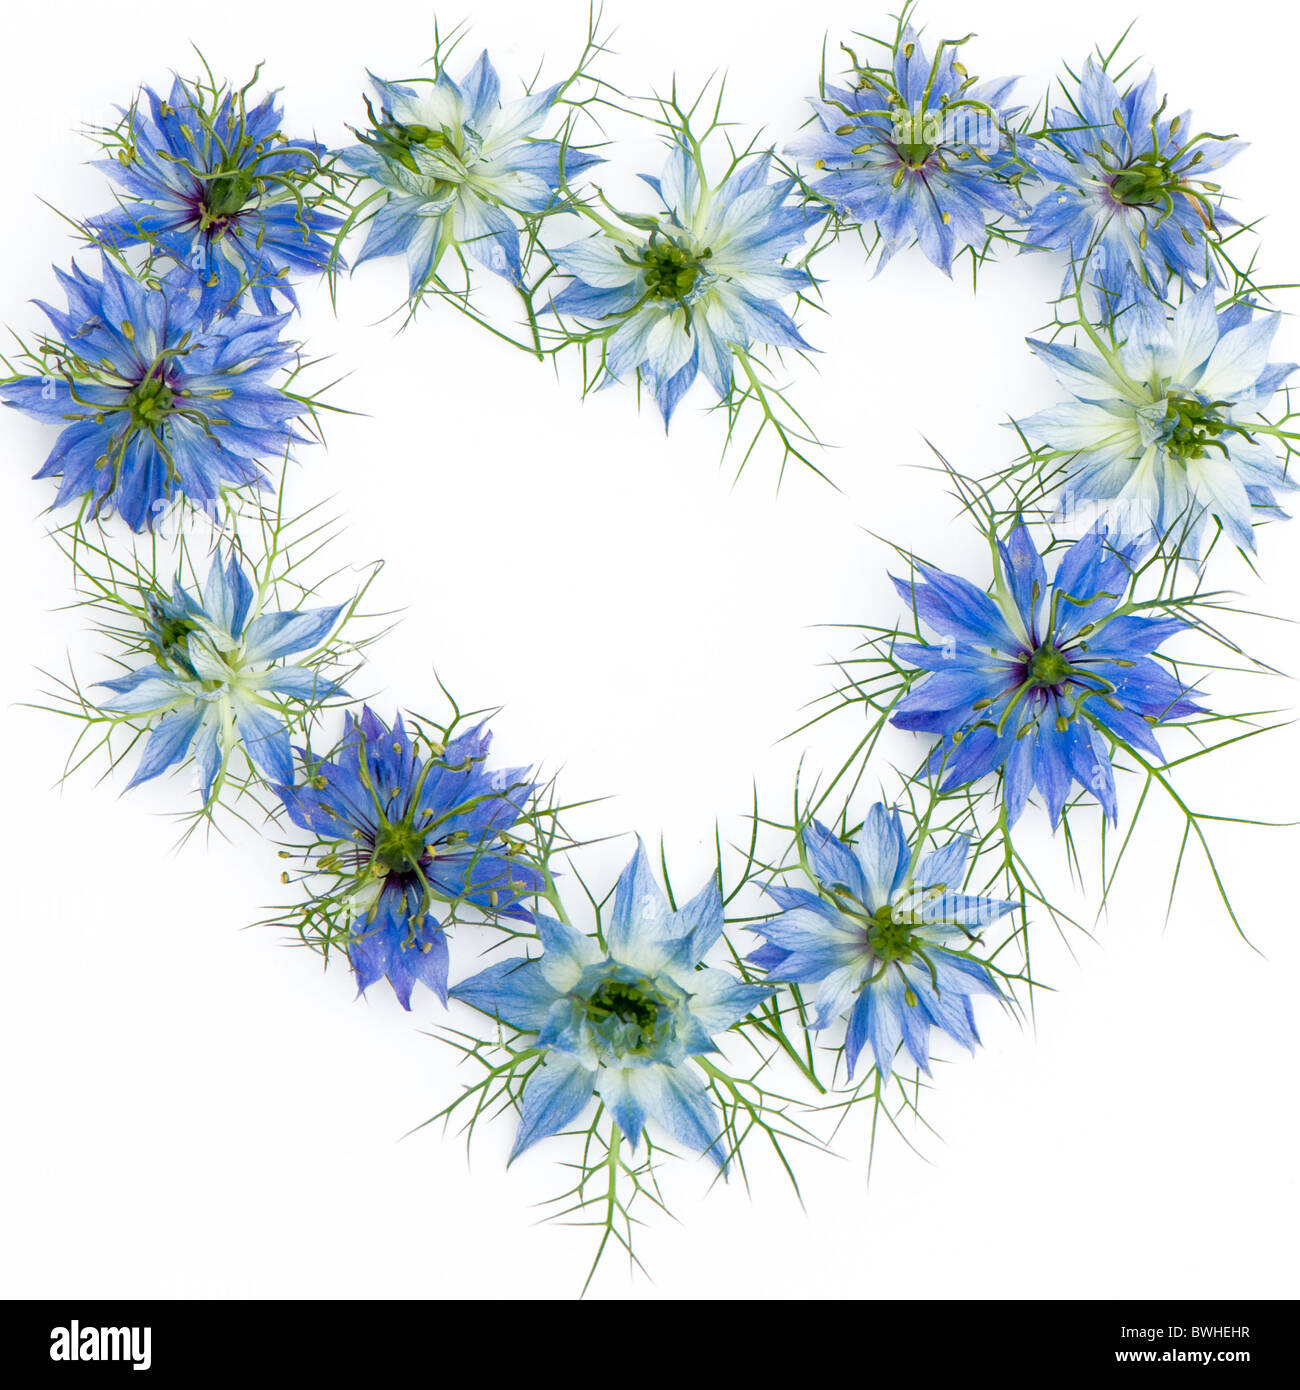 Love-dans-le-mist - Nigella damascena Fleurs disposées en forme de coeur avec un fond blanc Banque D'Images